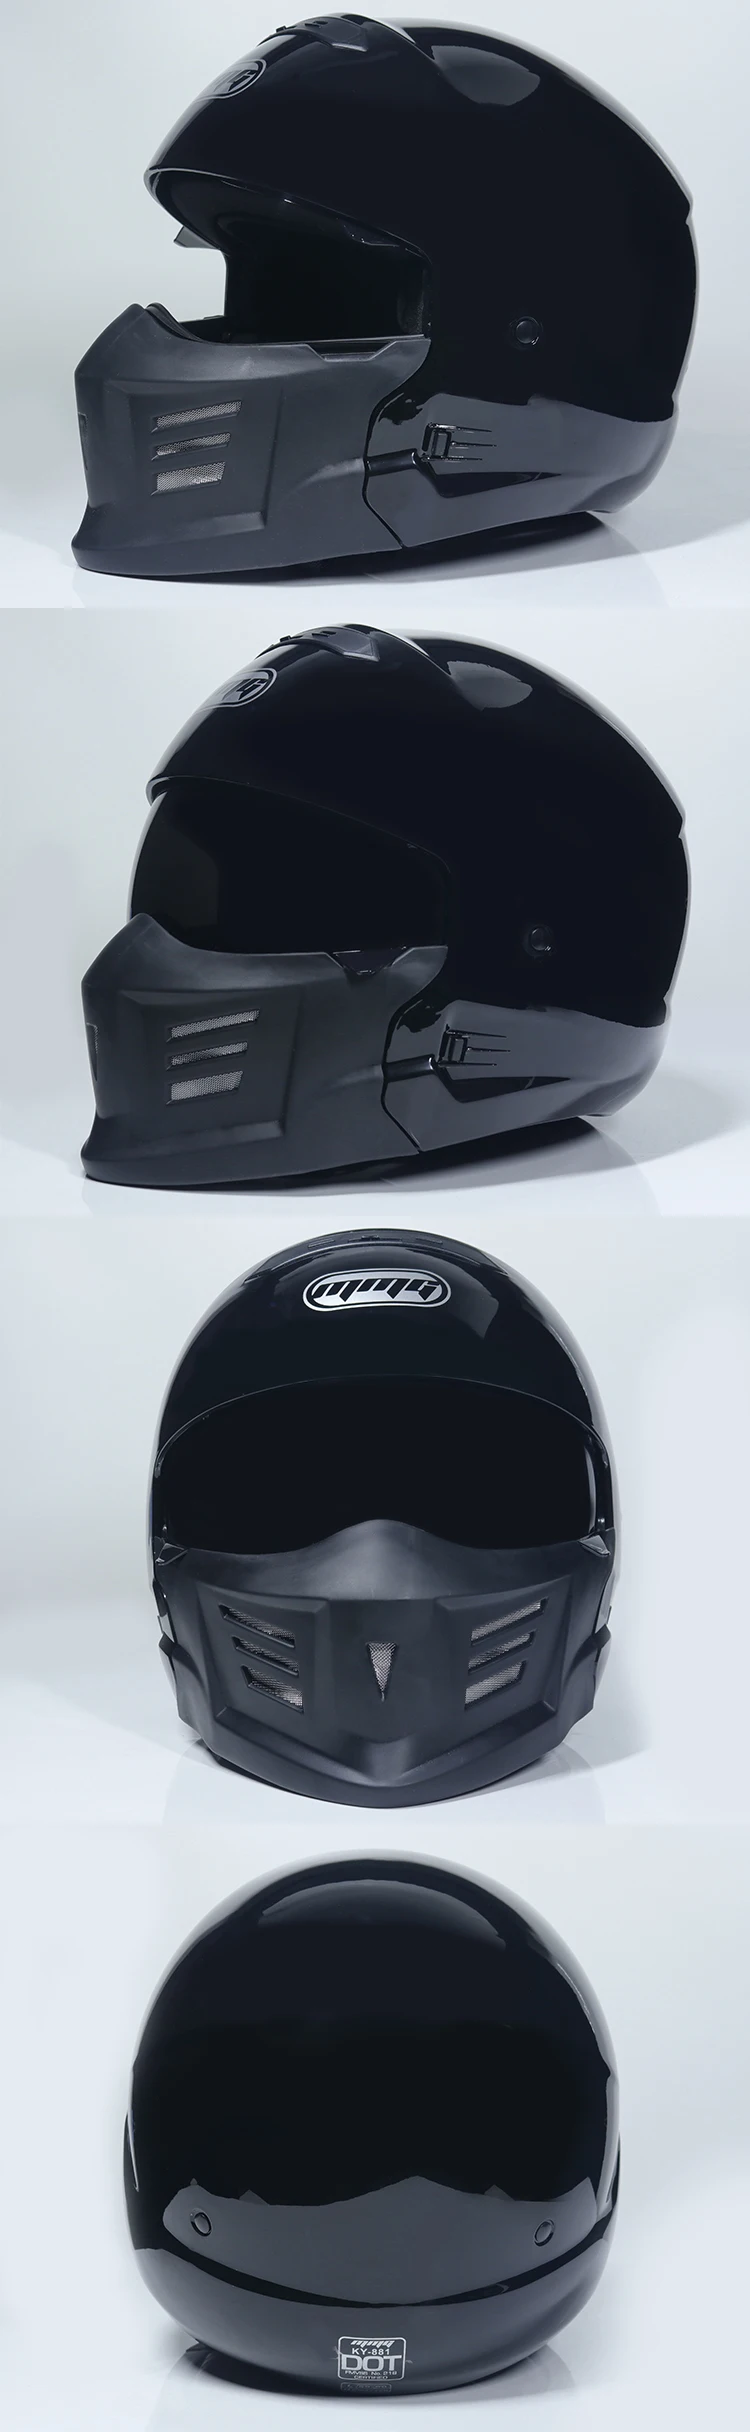 Ретро мотоциклетный шлем скорпиона локомотив индивидуальная комбинация полный шлем Композитный полушлем